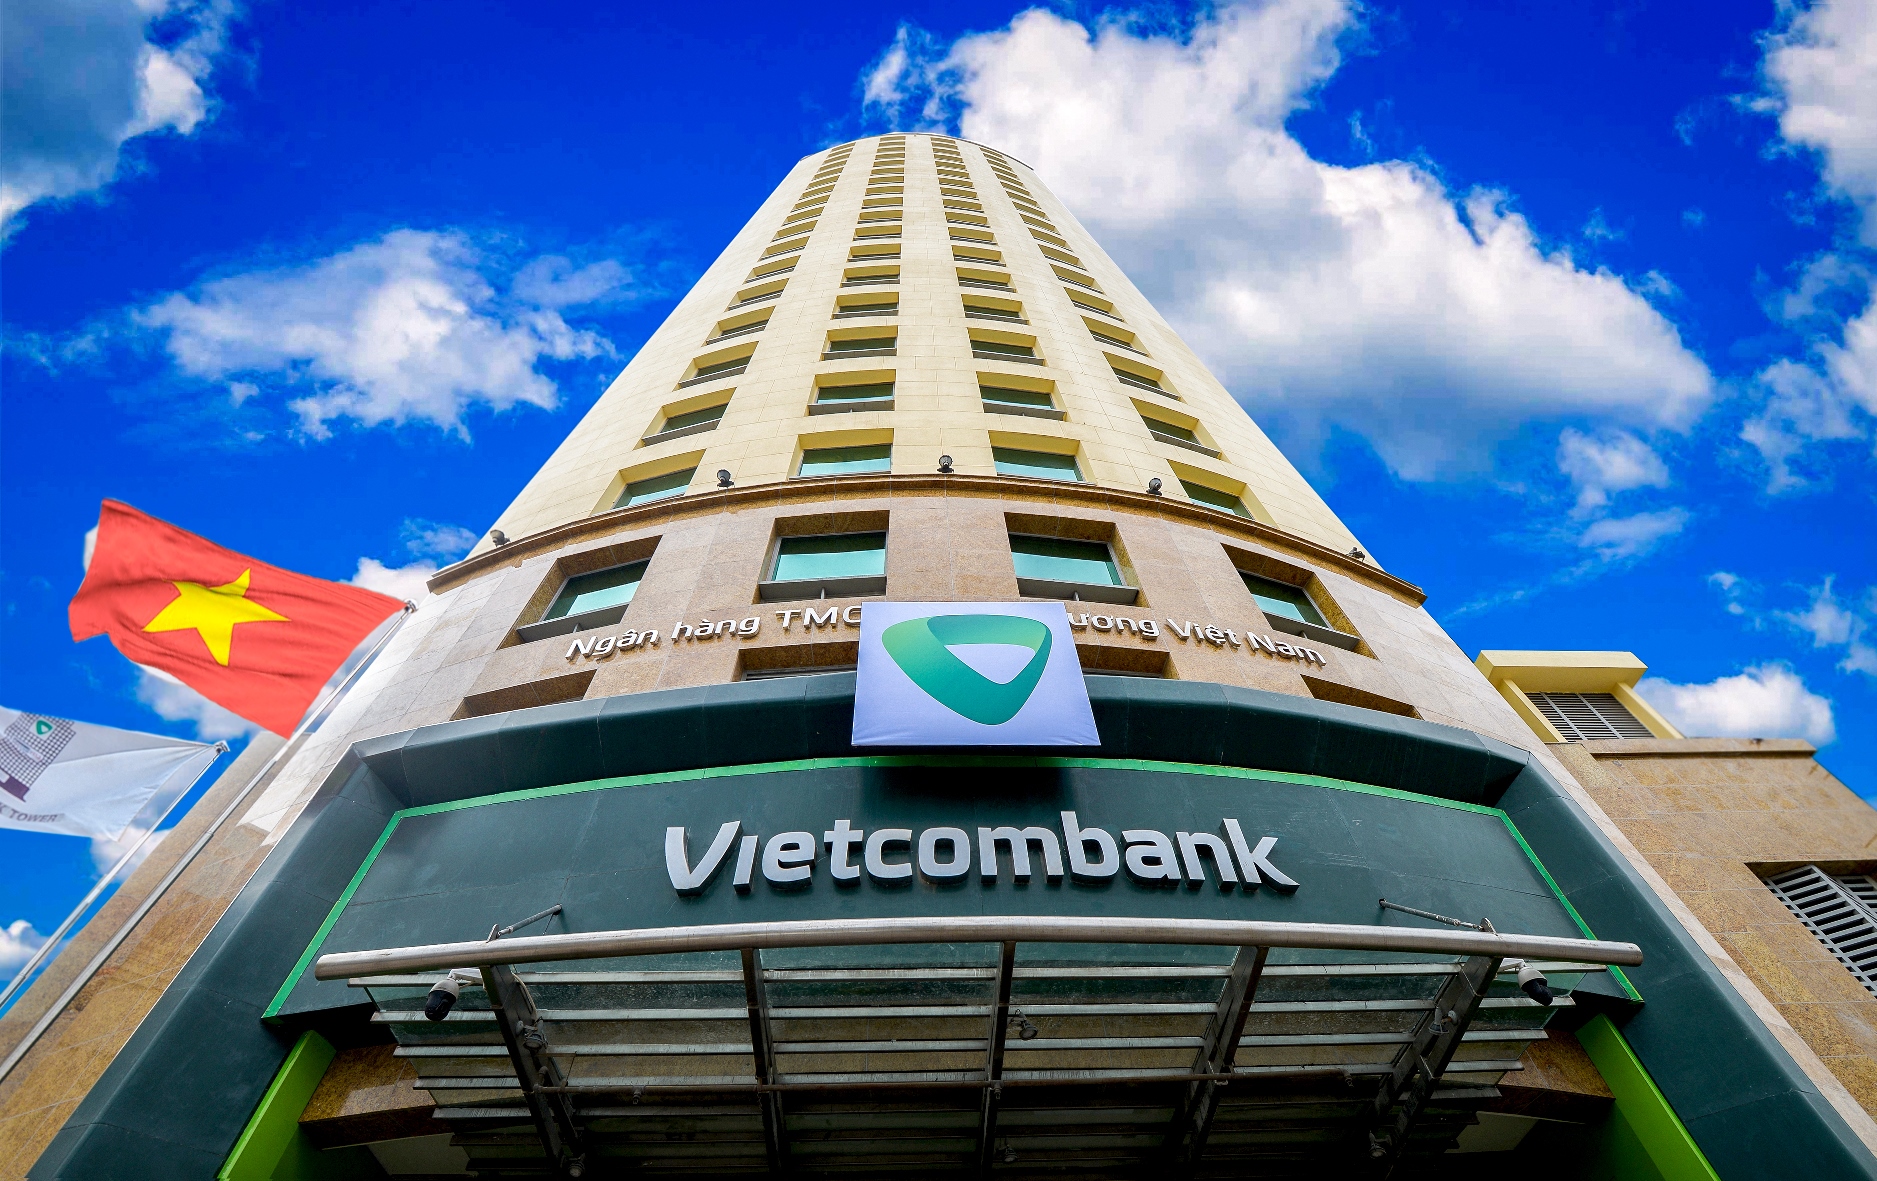 19 tỉnh thành phía Nam được ngân hàng Vietcombank giảm lãi suất